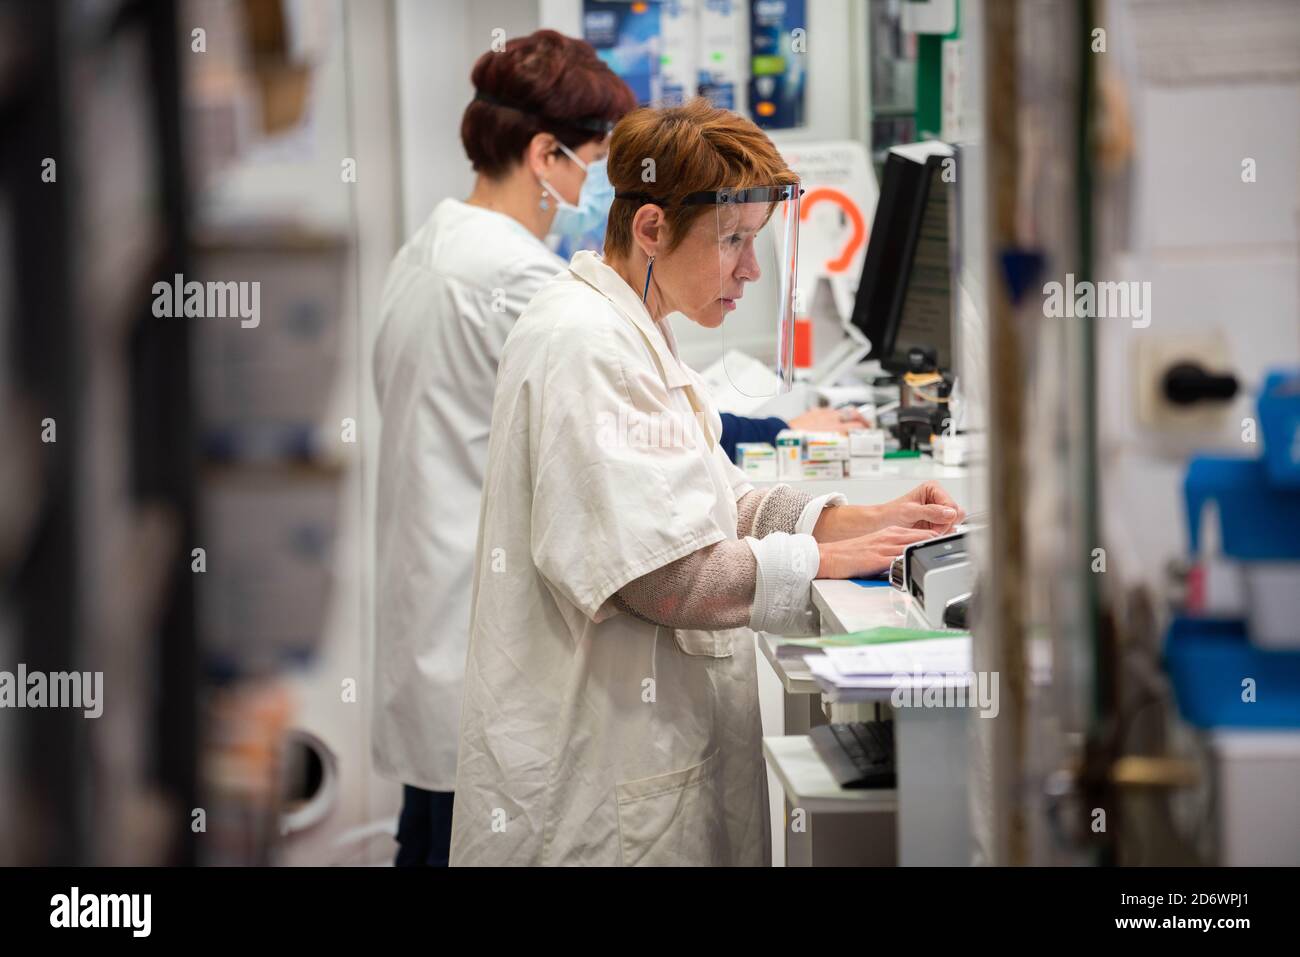 Pharmacie pendant la pandémie Covid-19, France. Banque D'Images